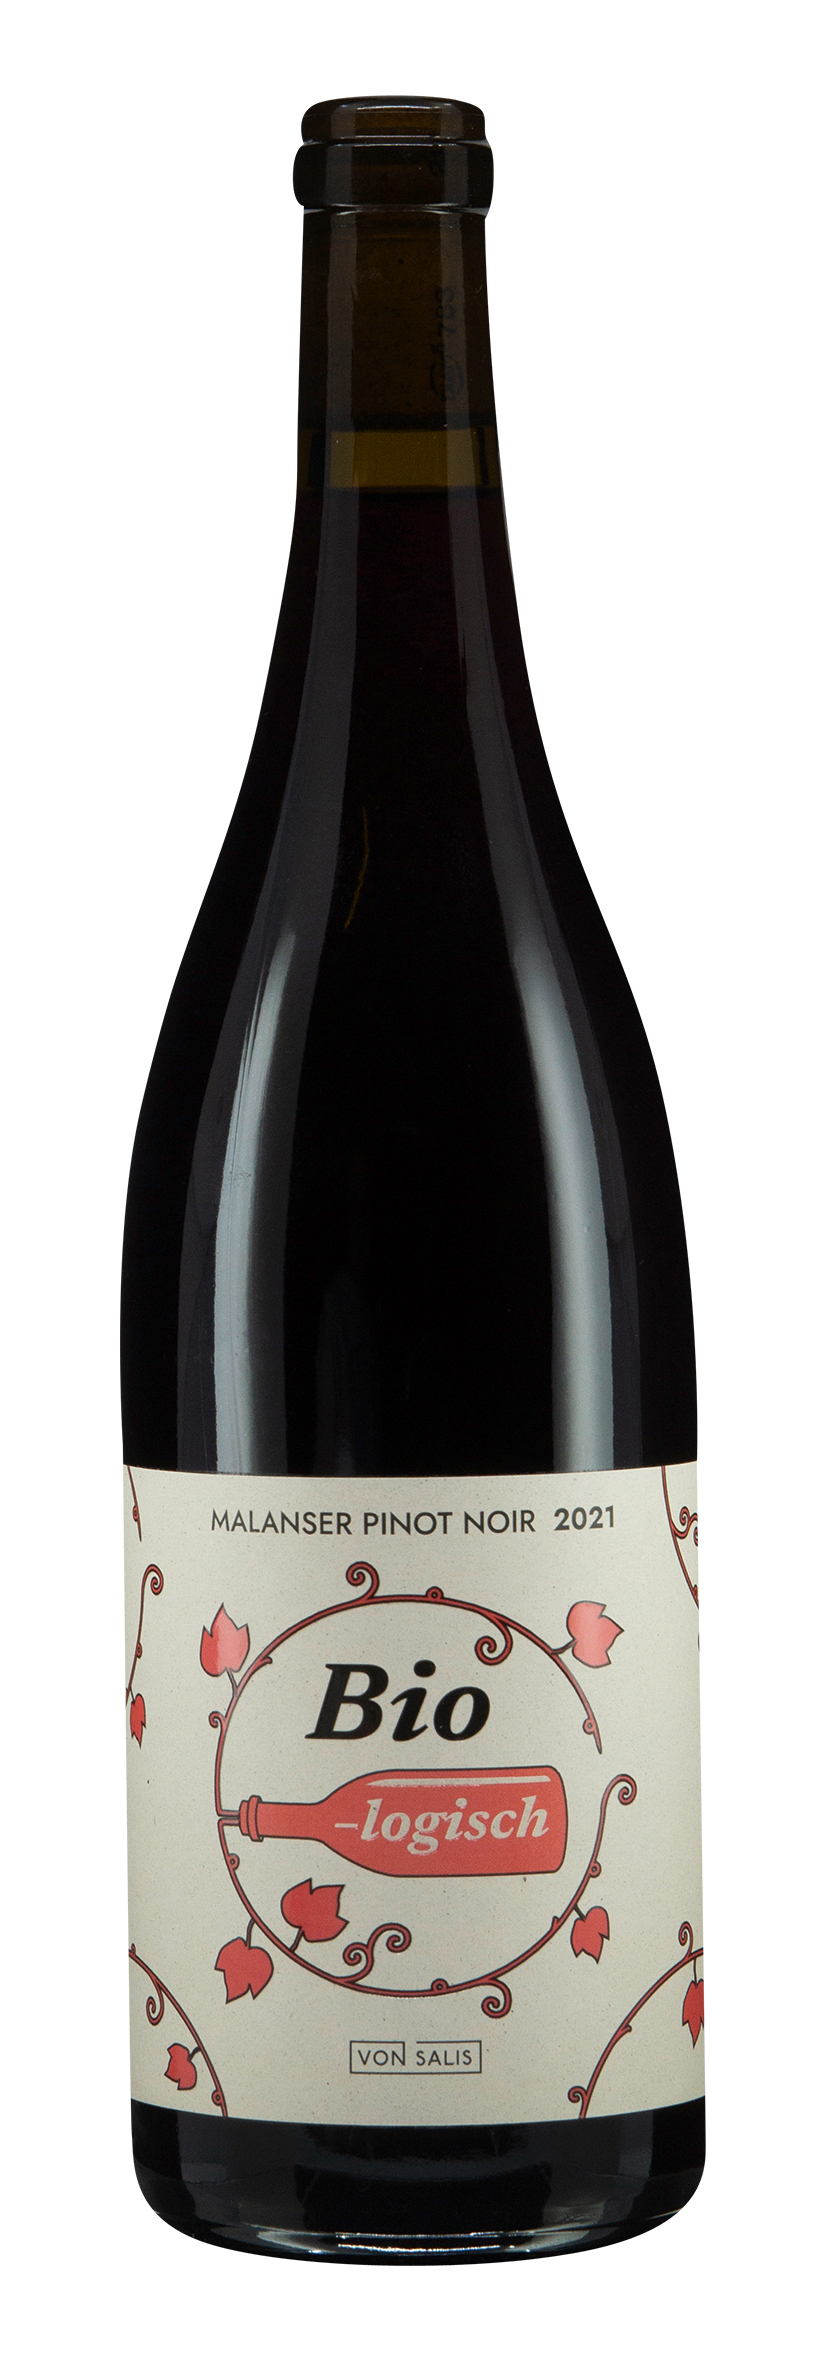 von Salis BIO-logisch Malanser Pinot Noir 2021